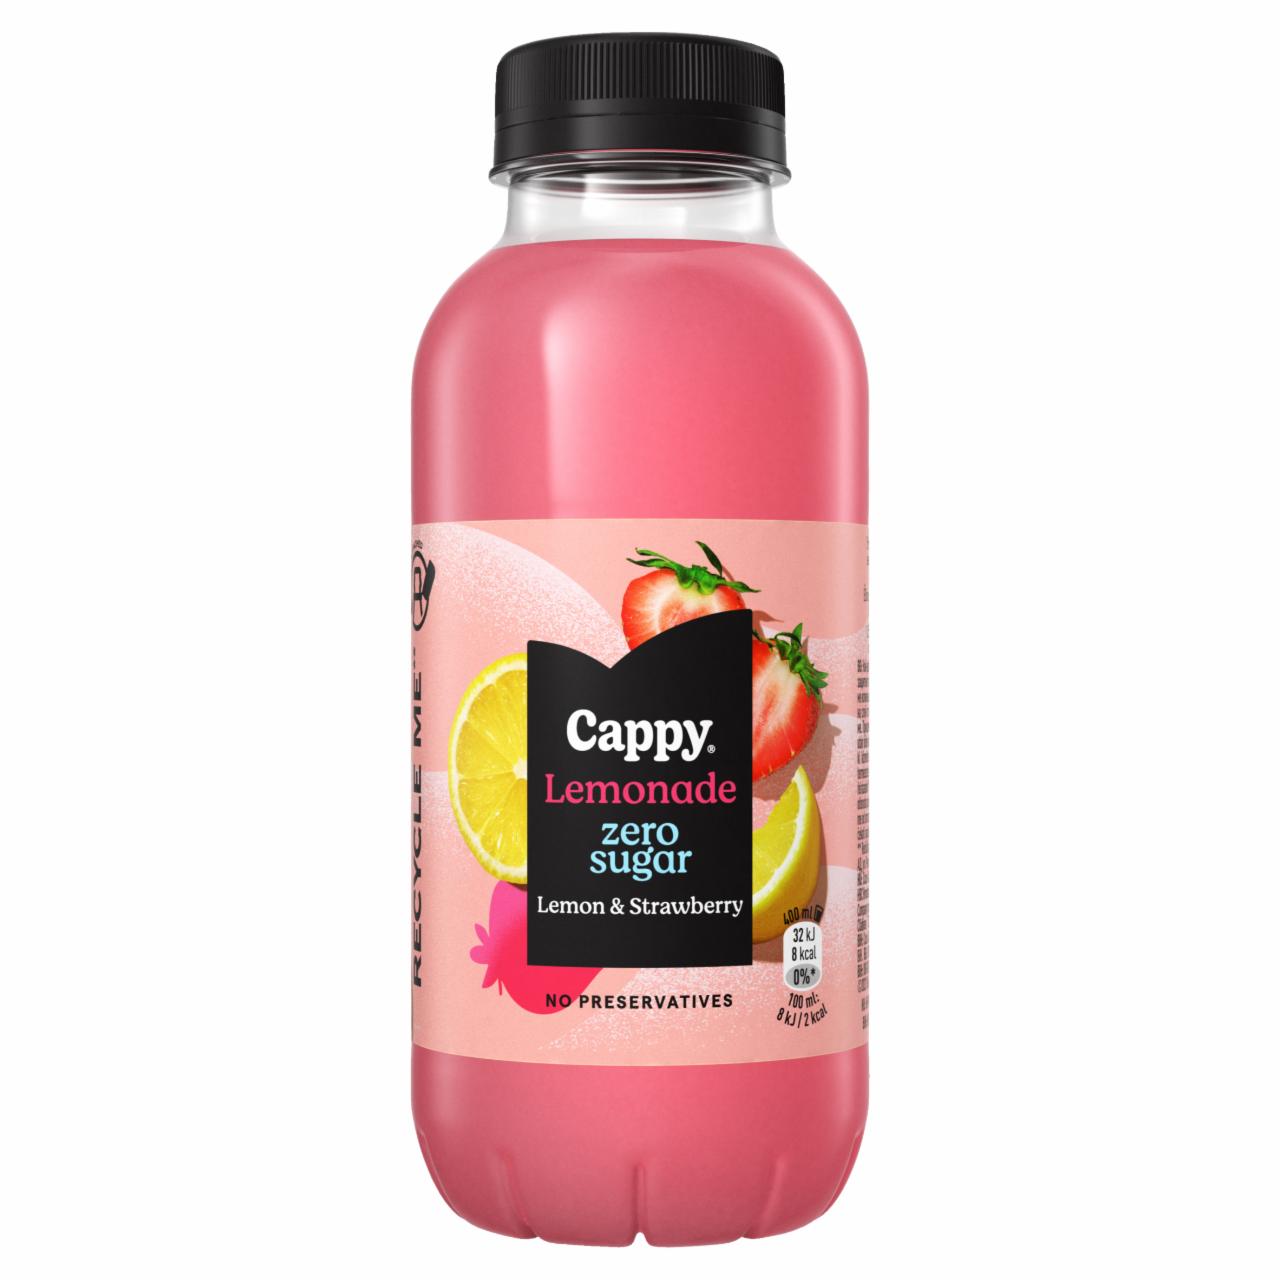 Képek - Cappy Lemonade szénsavmentes citromos üdítőital eperlével és édesítőszerekkel 400 ml